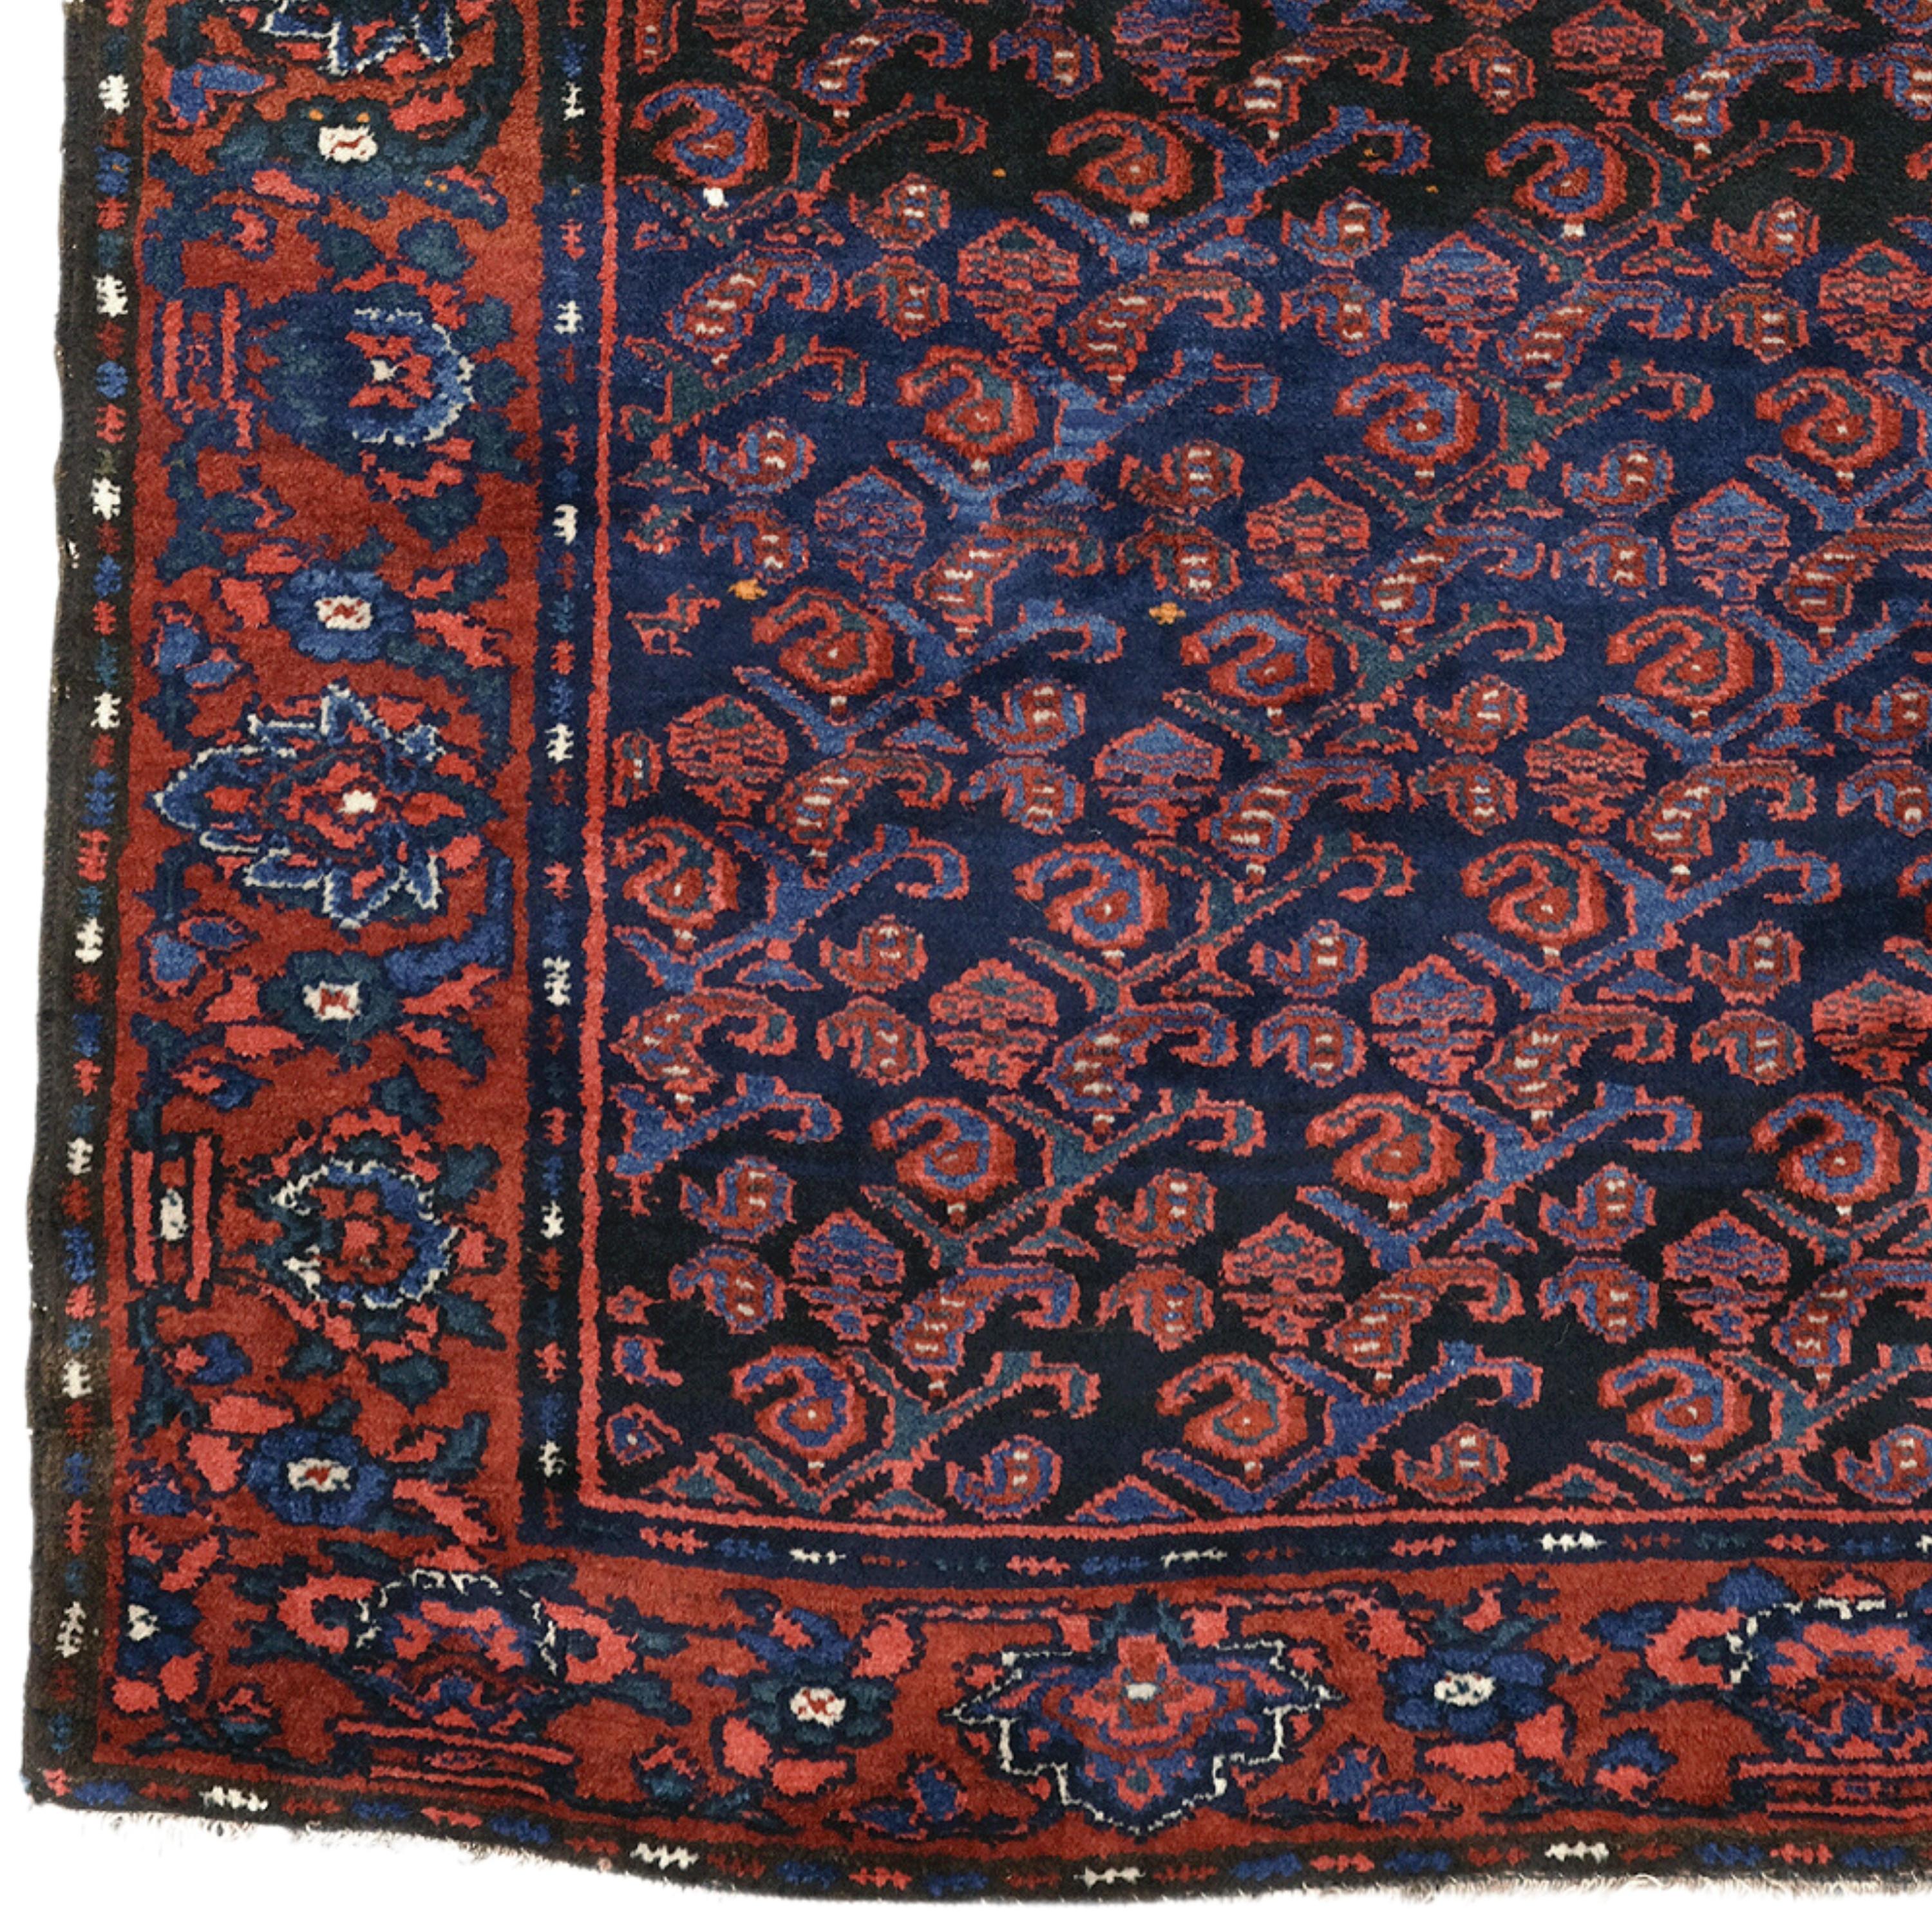 Dieser elegante kurdische Teppich aus dem 19. Jahrhundert verleiht mit seinen sorgfältig gewebten Details und seiner reichen Farbpalette jeder Ecke Ihres Zuhauses eine edle Note. Dieses einzigartige Stück aus der osmanischen Zeit ist eines der